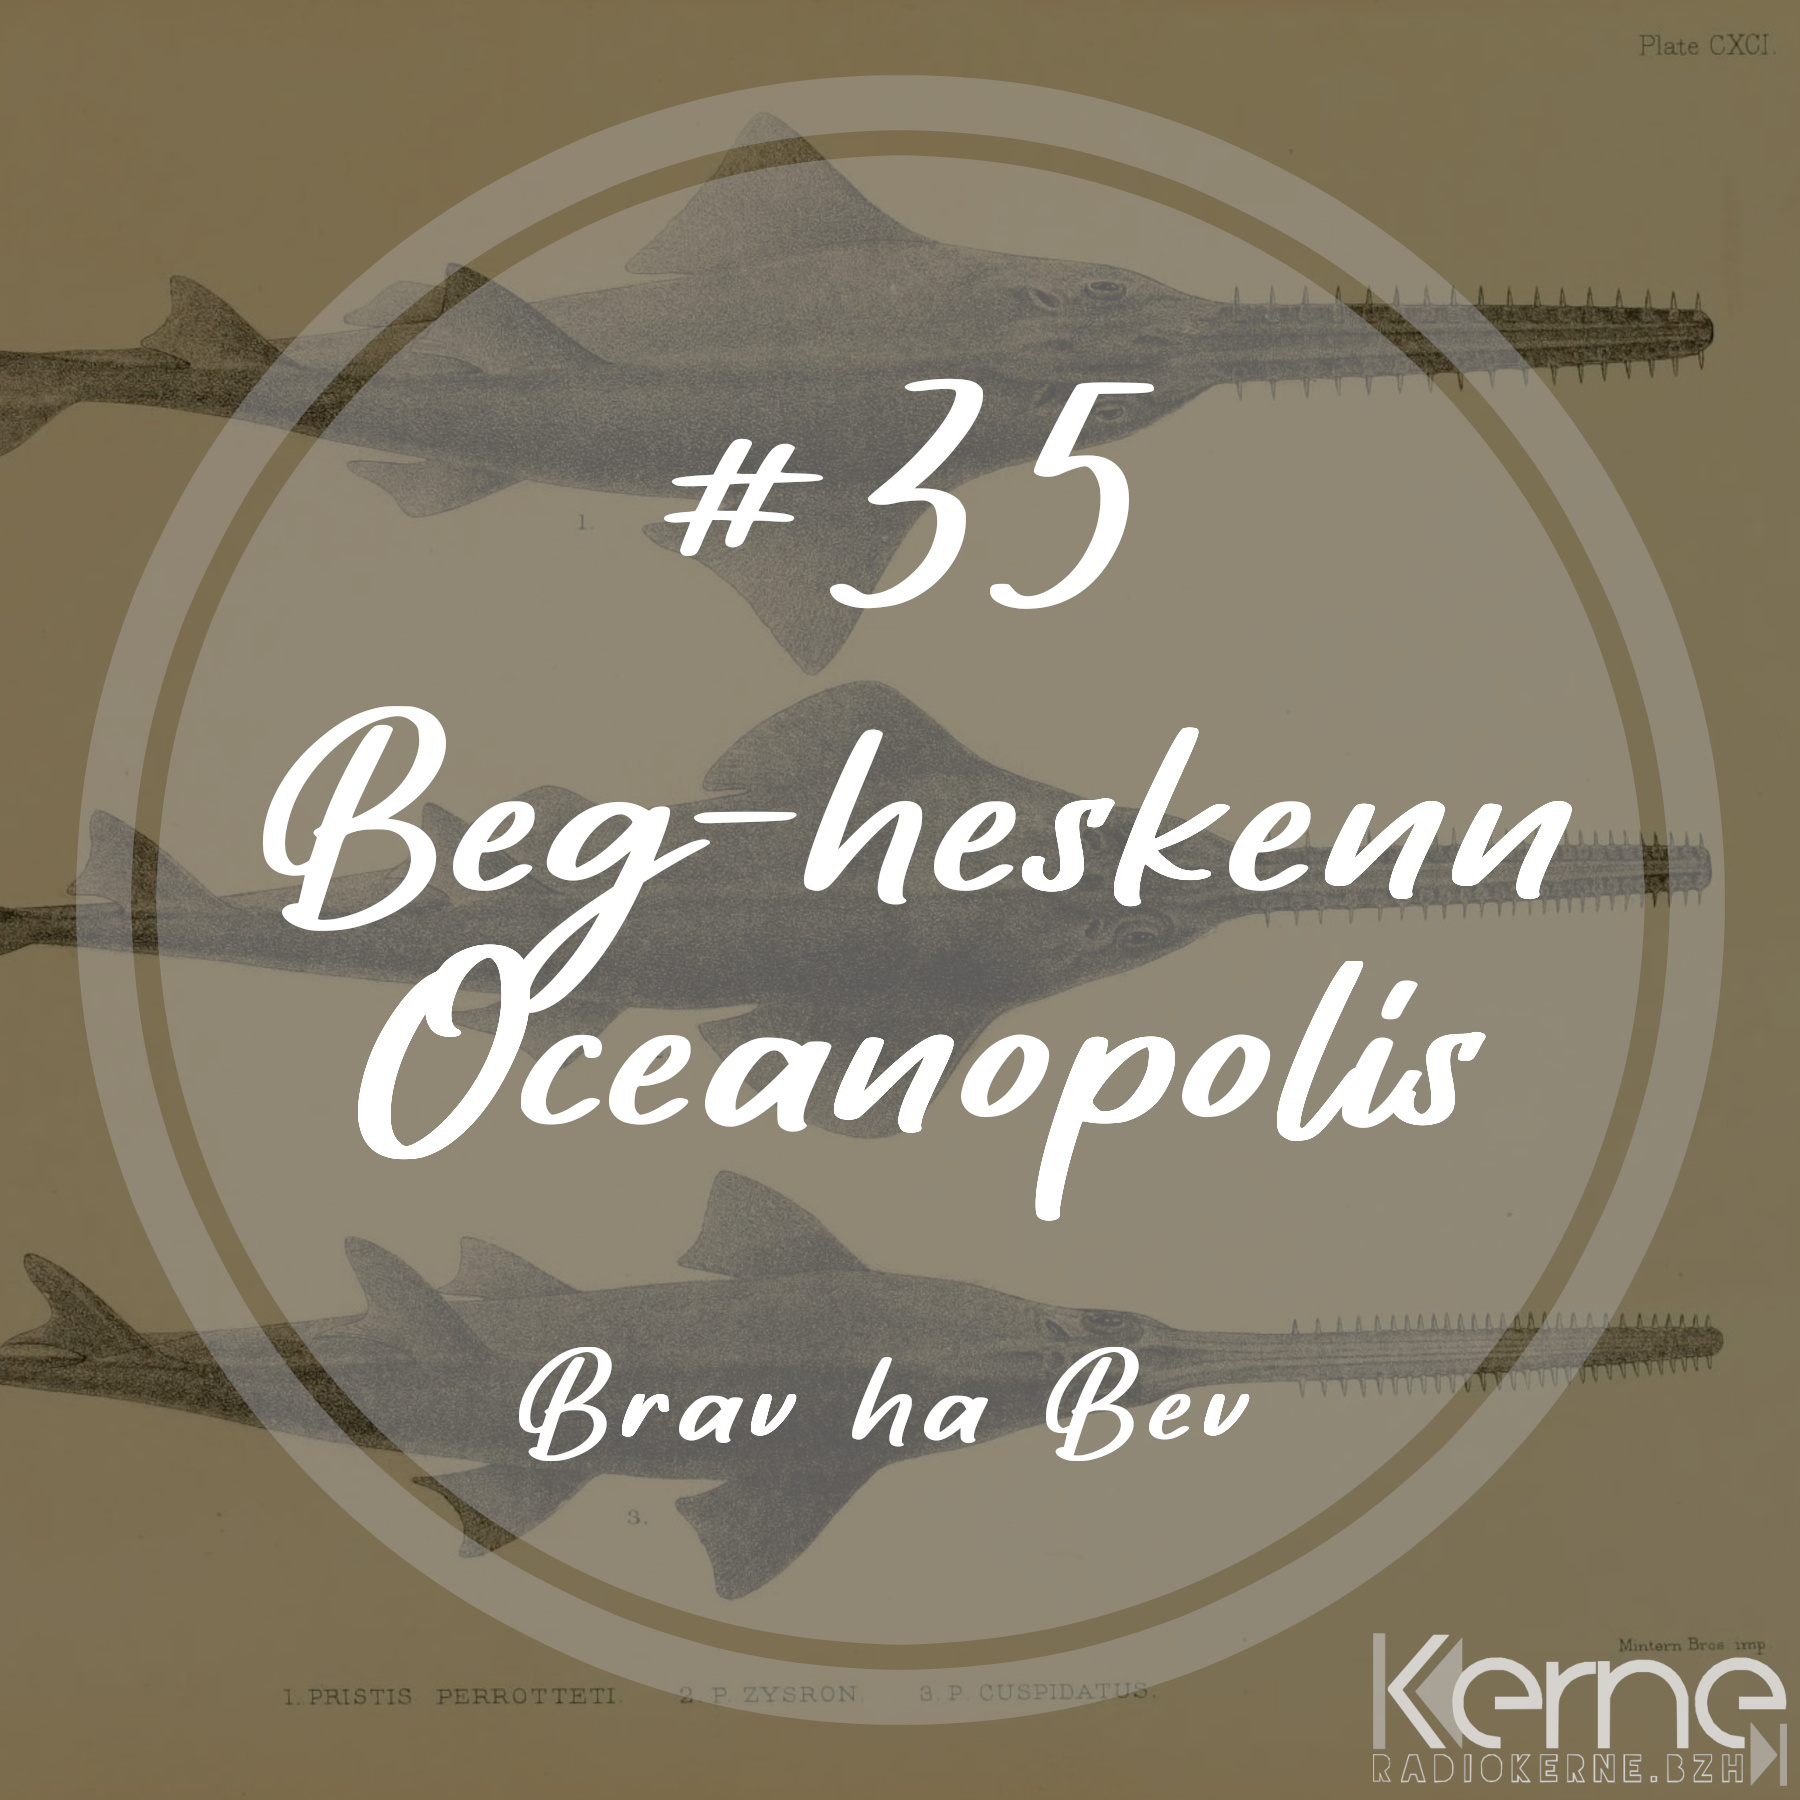 #35 Beg-heskenn Oceanopolis